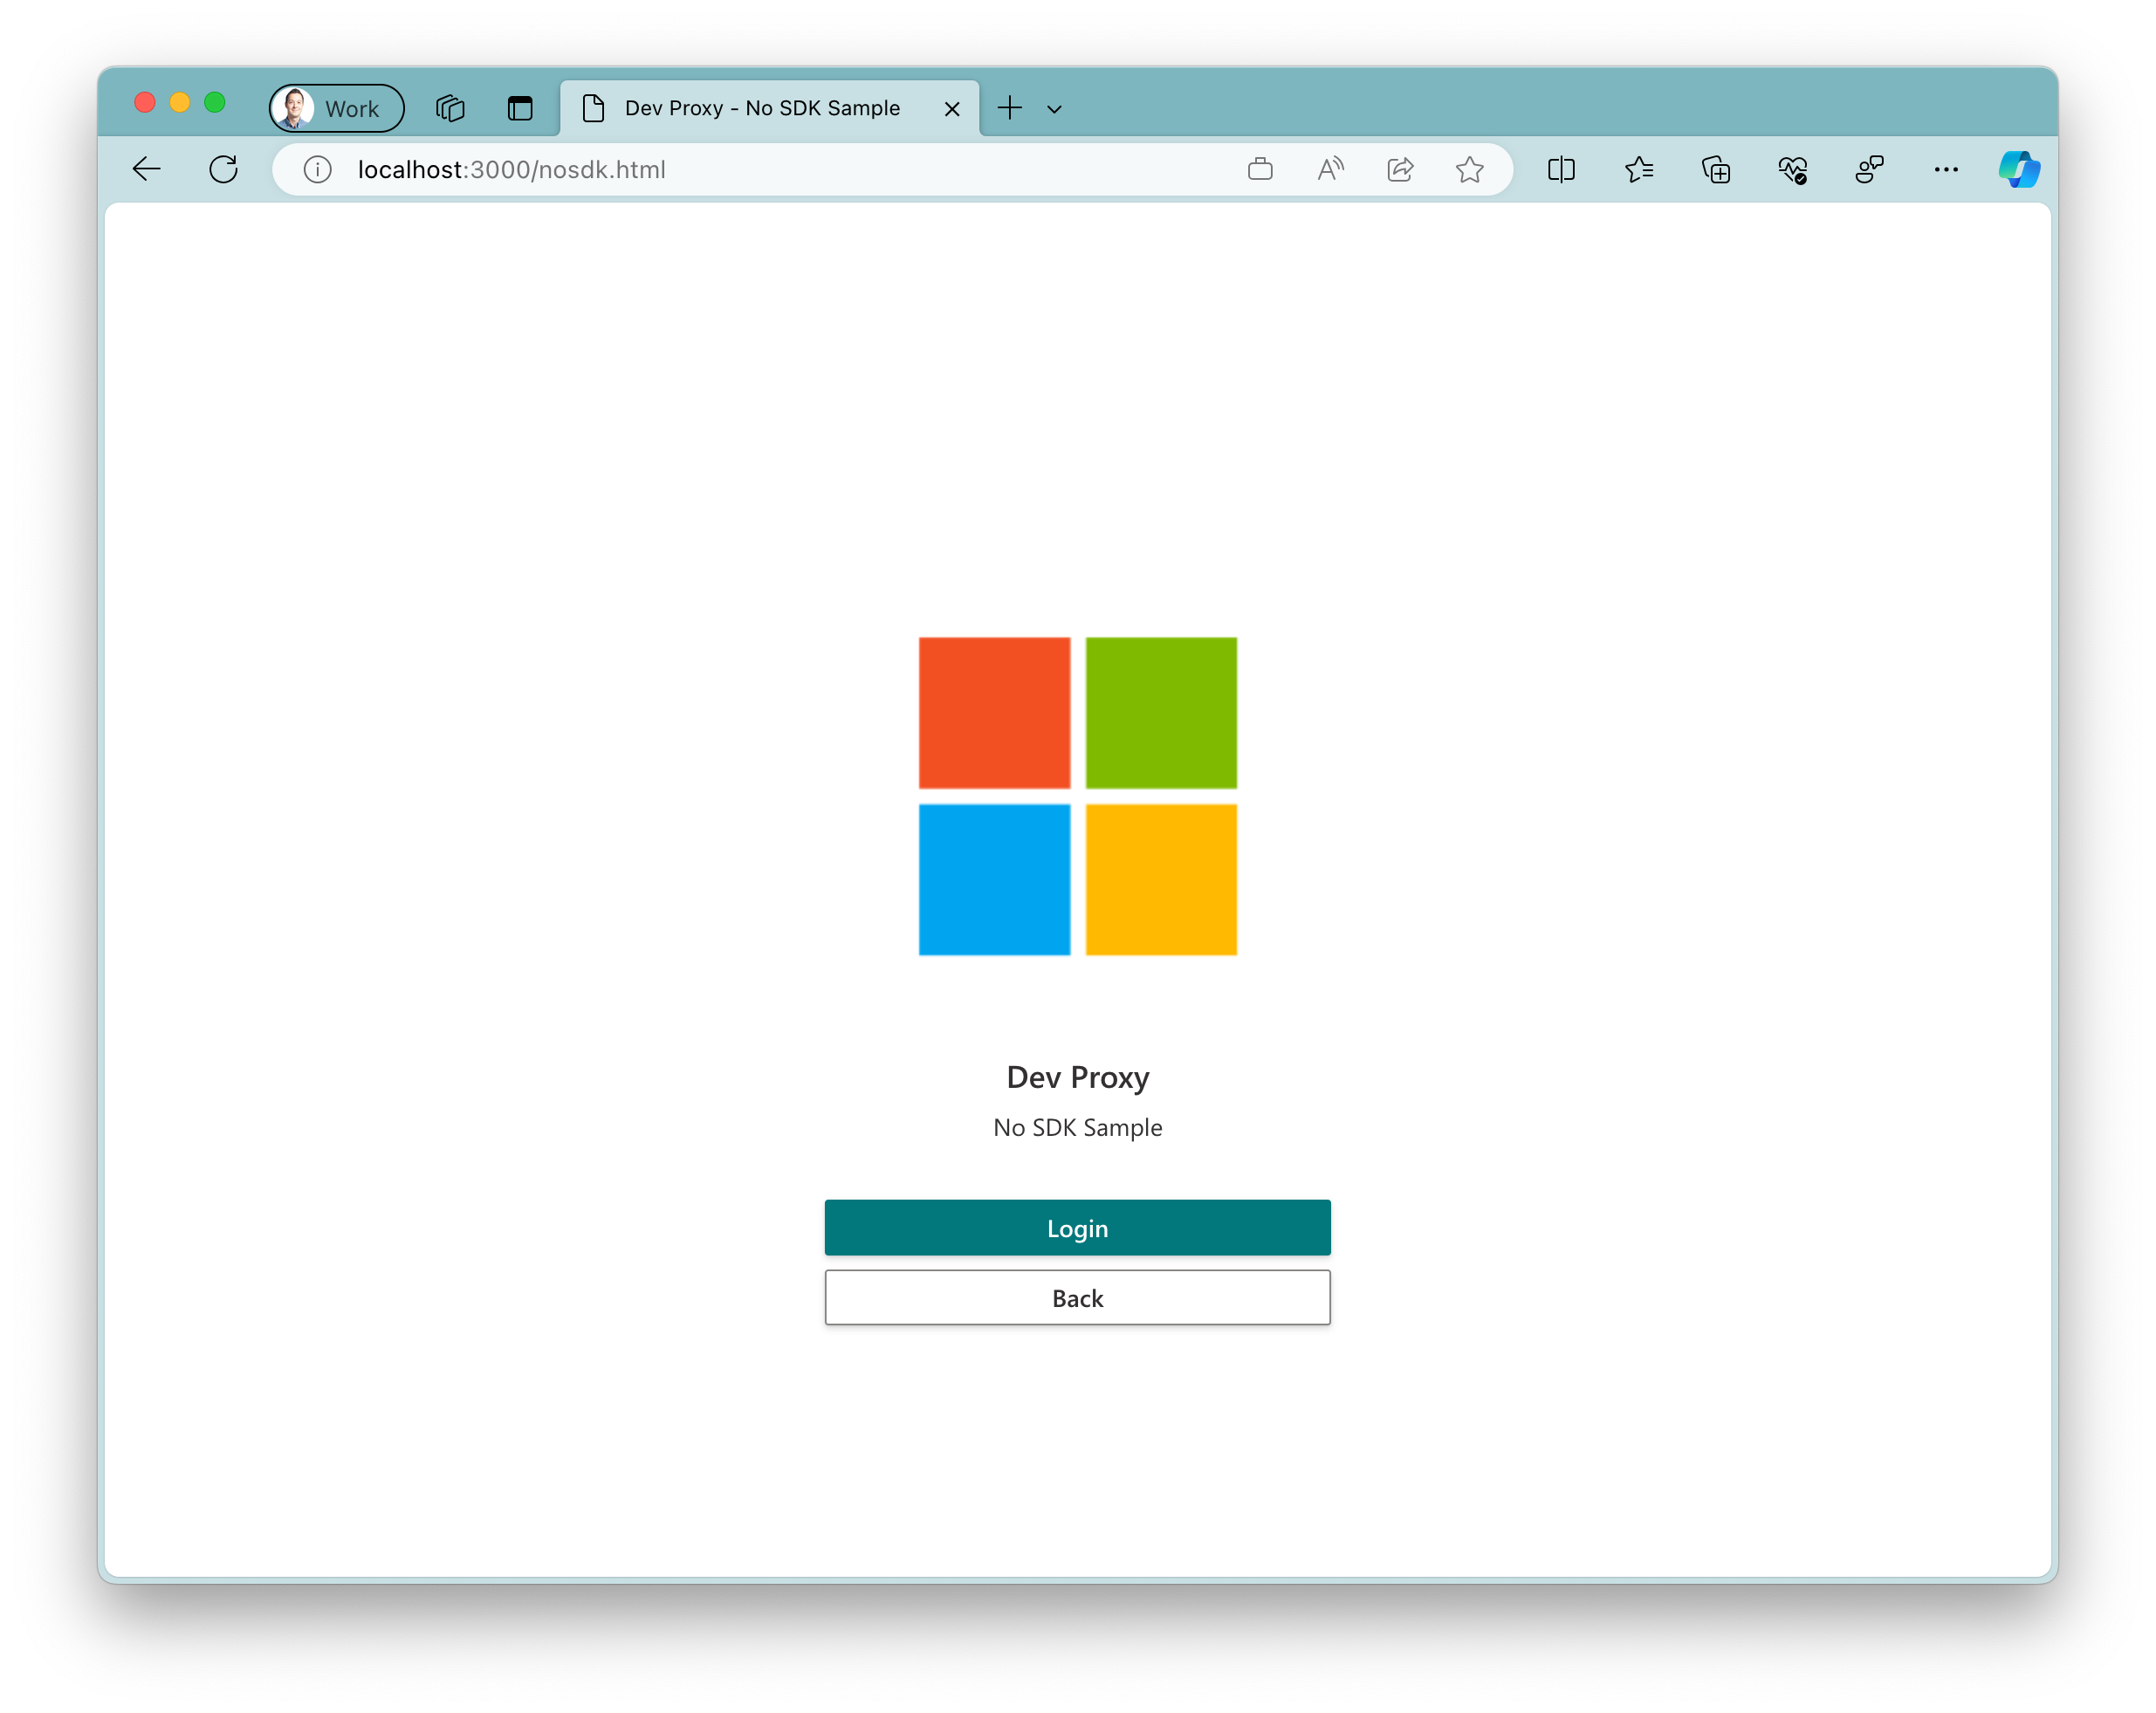 Снимок экрана: пример приложения, запущенного в браузере Microsoft Edge на Windows 11. Приложение отображает большой логотип Майкрософт с двумя кнопками под ним. Основная кнопка с текстом 